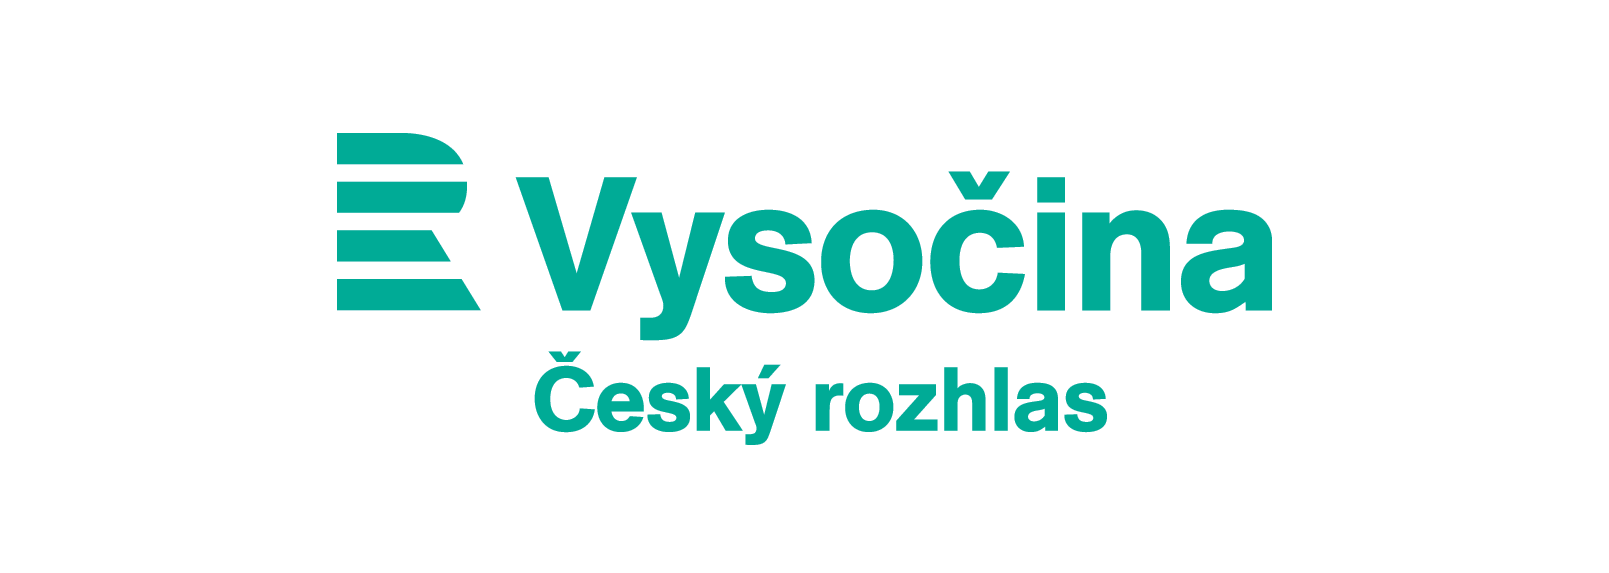 Český rozhlas Vysočina 